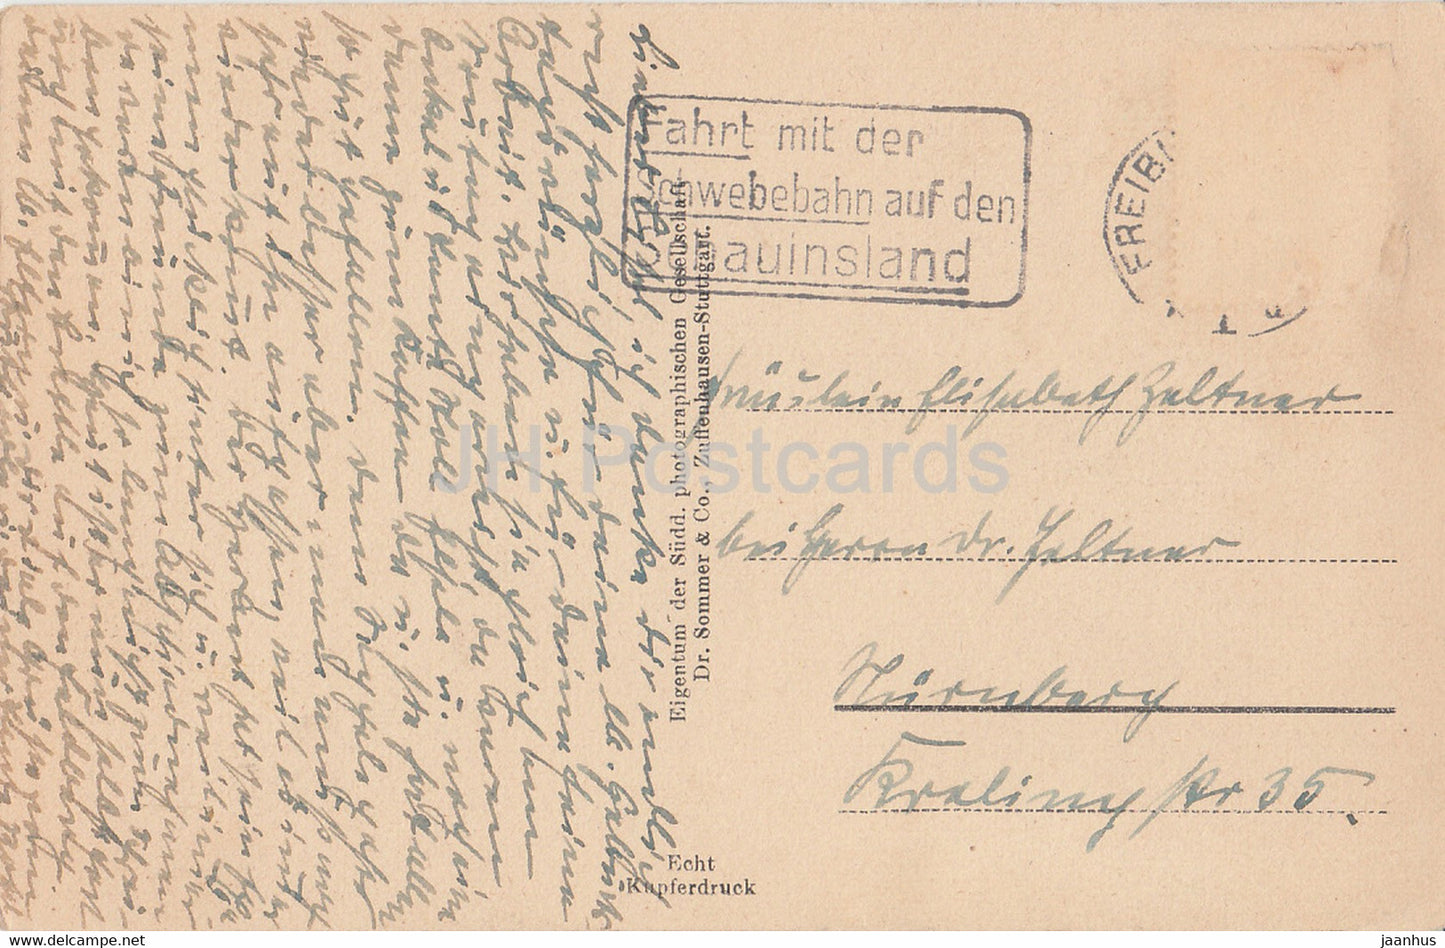 Freiburg i Br - 2606 - carte postale ancienne - Allemagne - utilisé